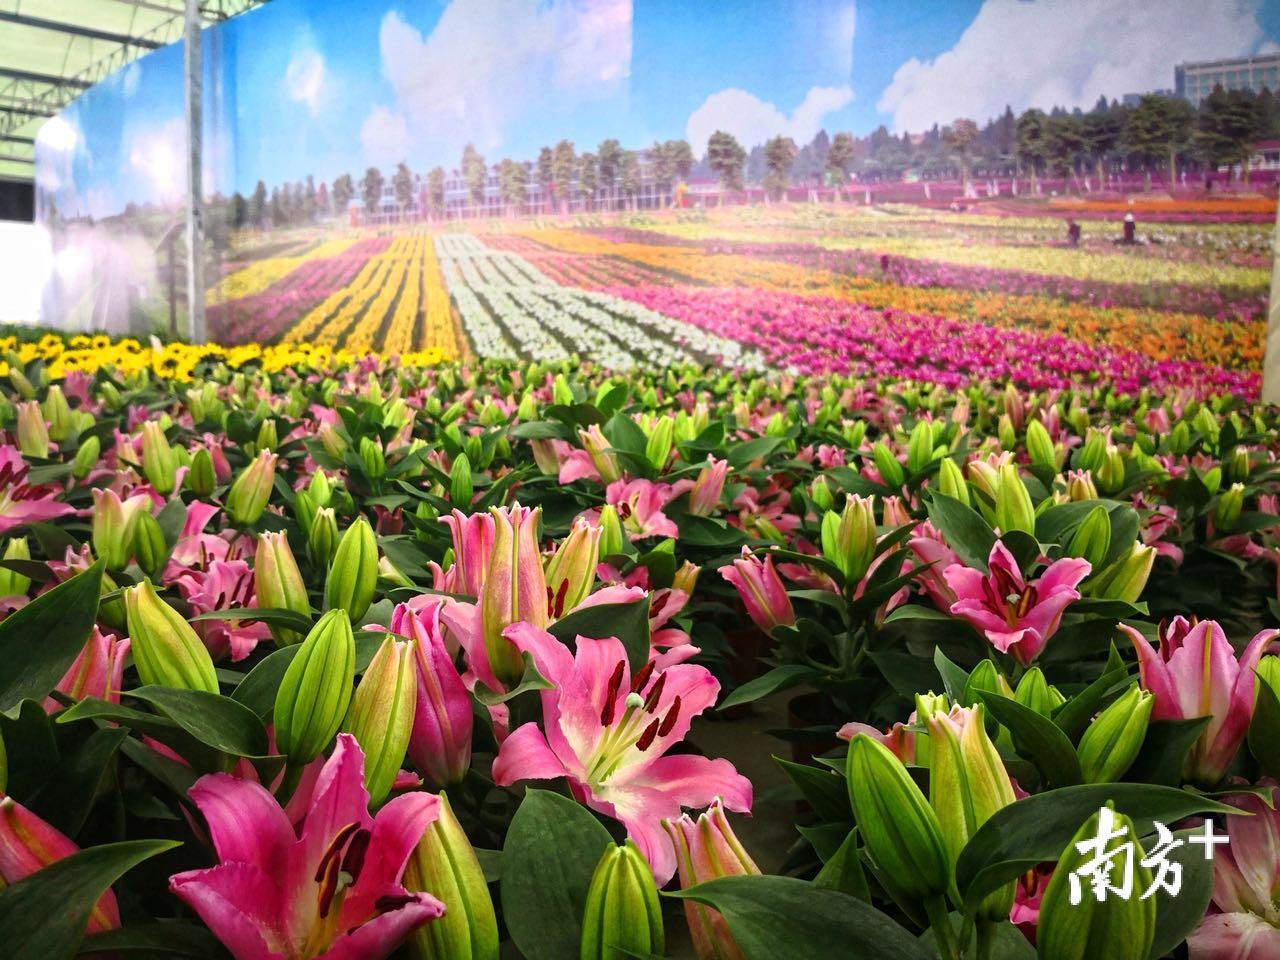 进入主场馆,迎面而来是一幅巨型的植物墙,由600多朵多色的百合花组成